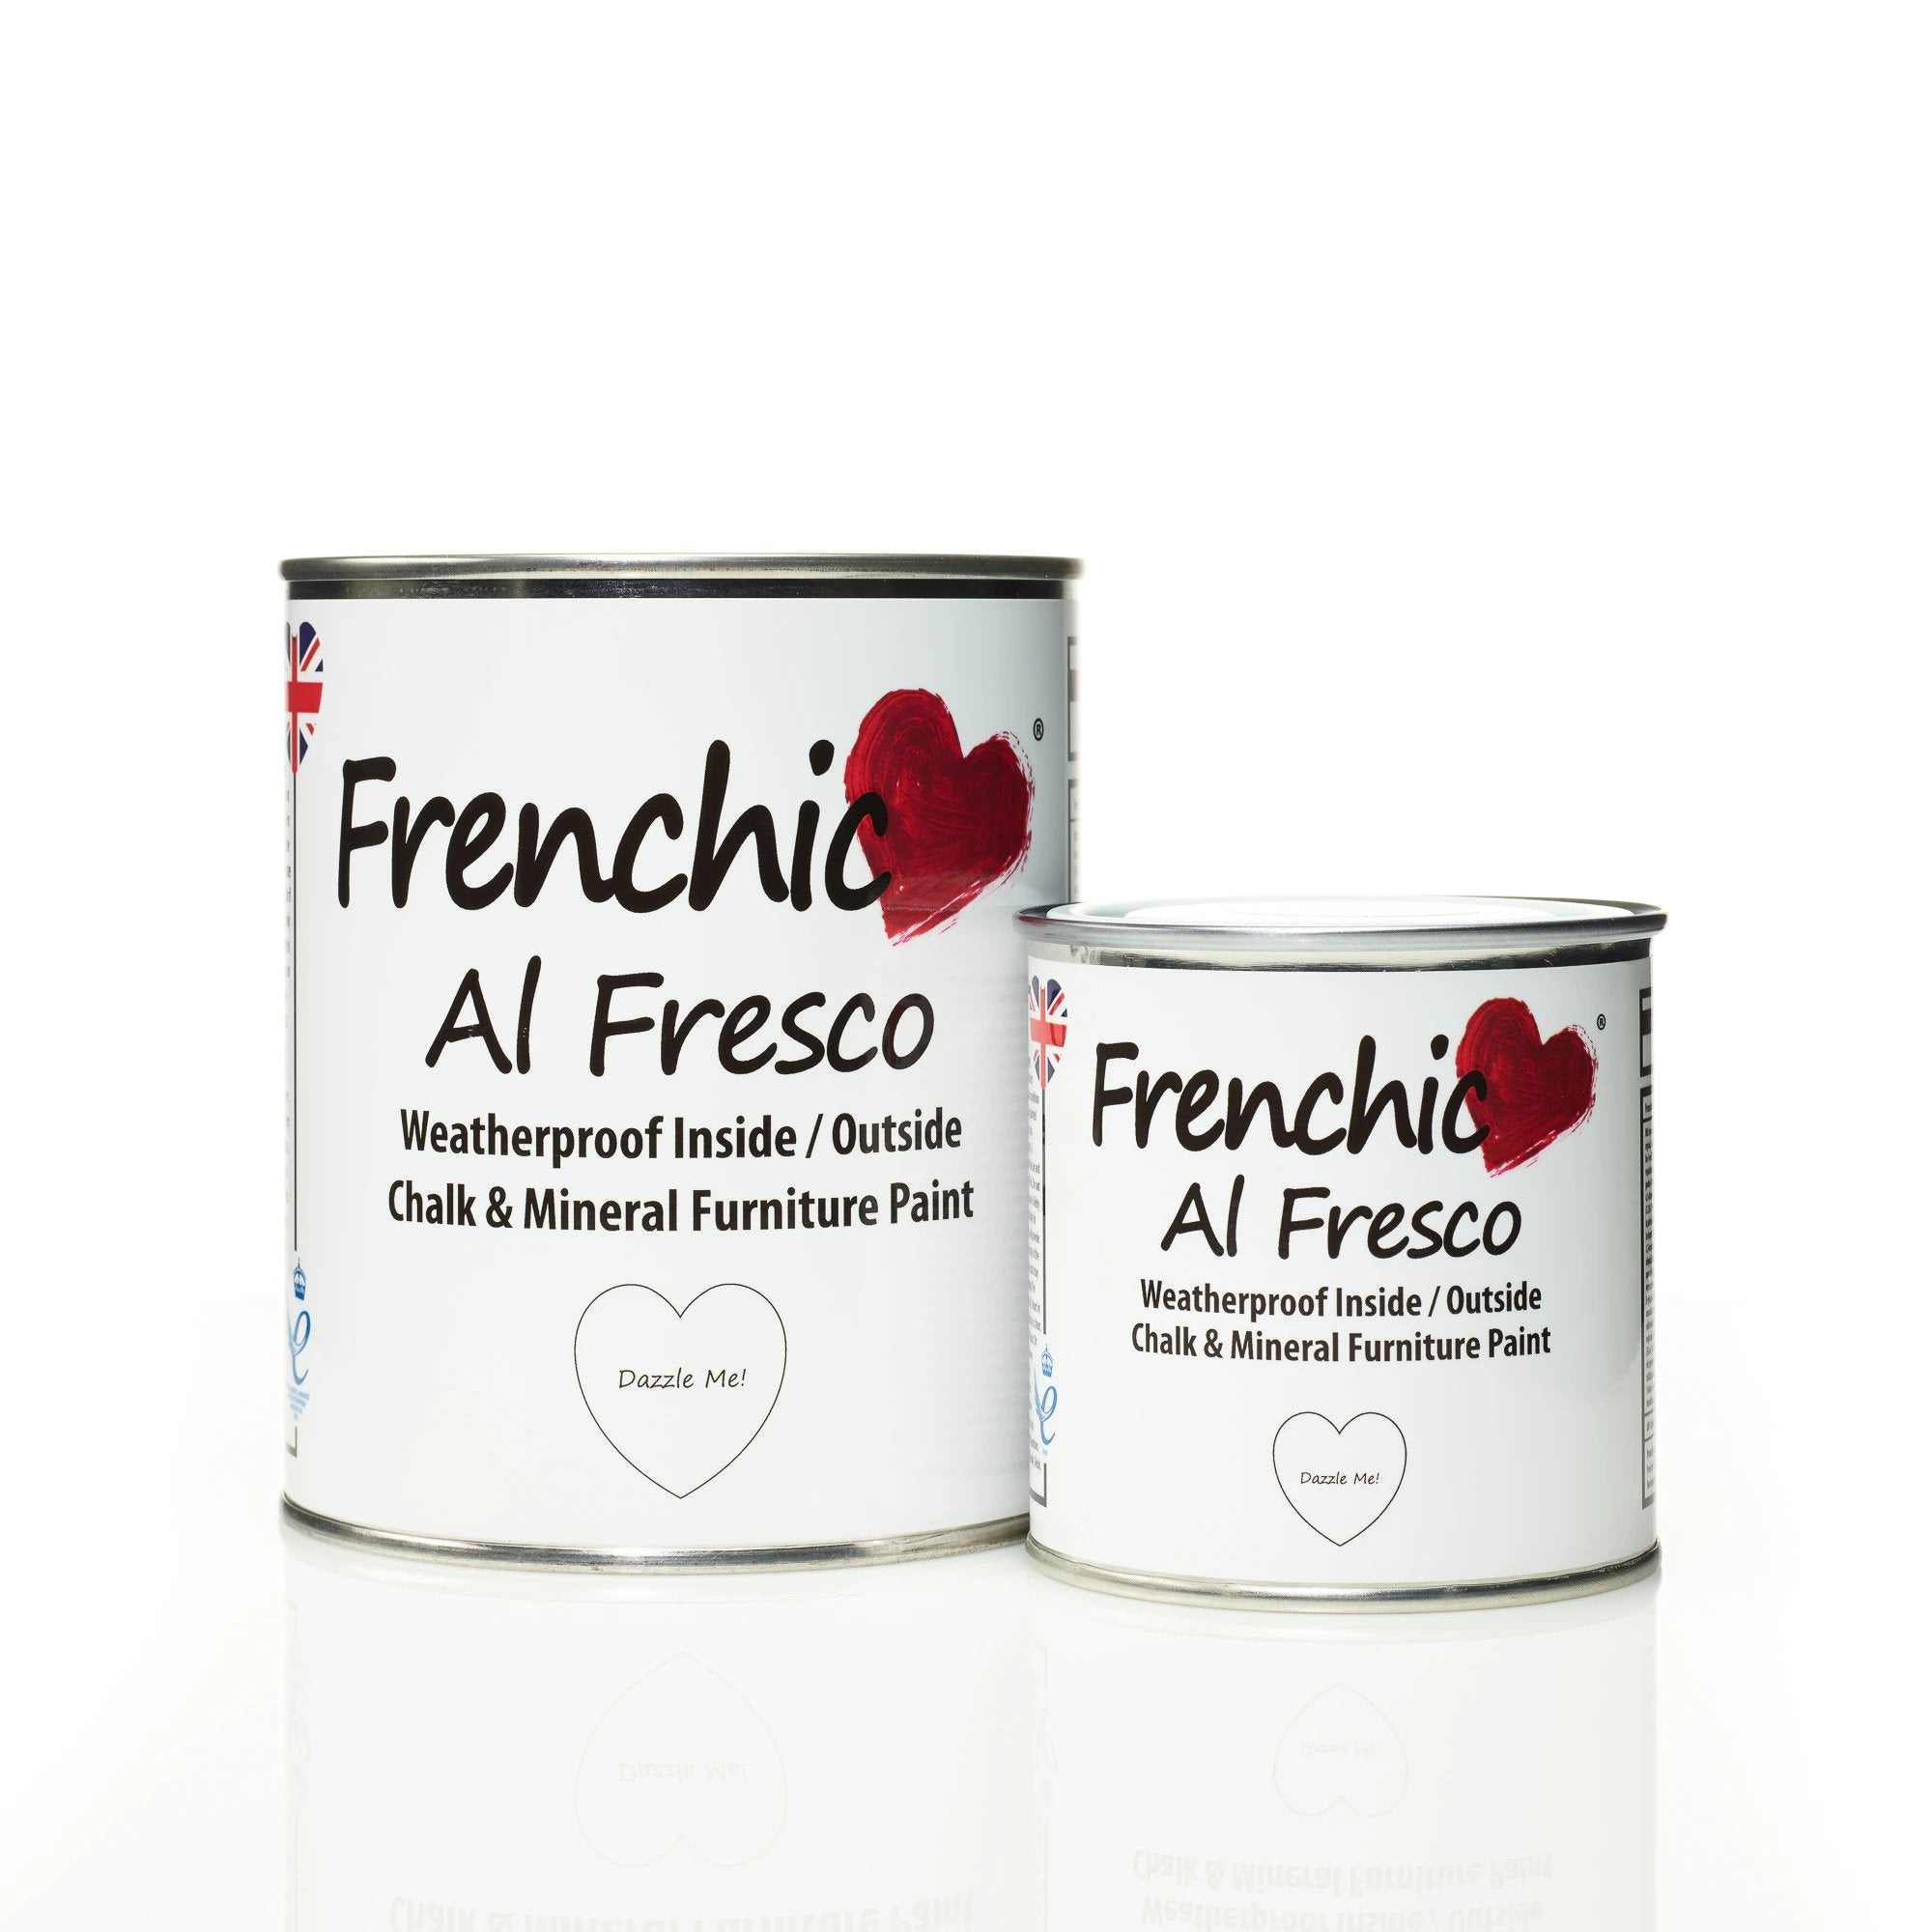 Puhdas valkoinen maali keraamisten laattojen ja keittiönkaapinovien maalaukseen Dazzle Me! Al Fresco sarjasta. 